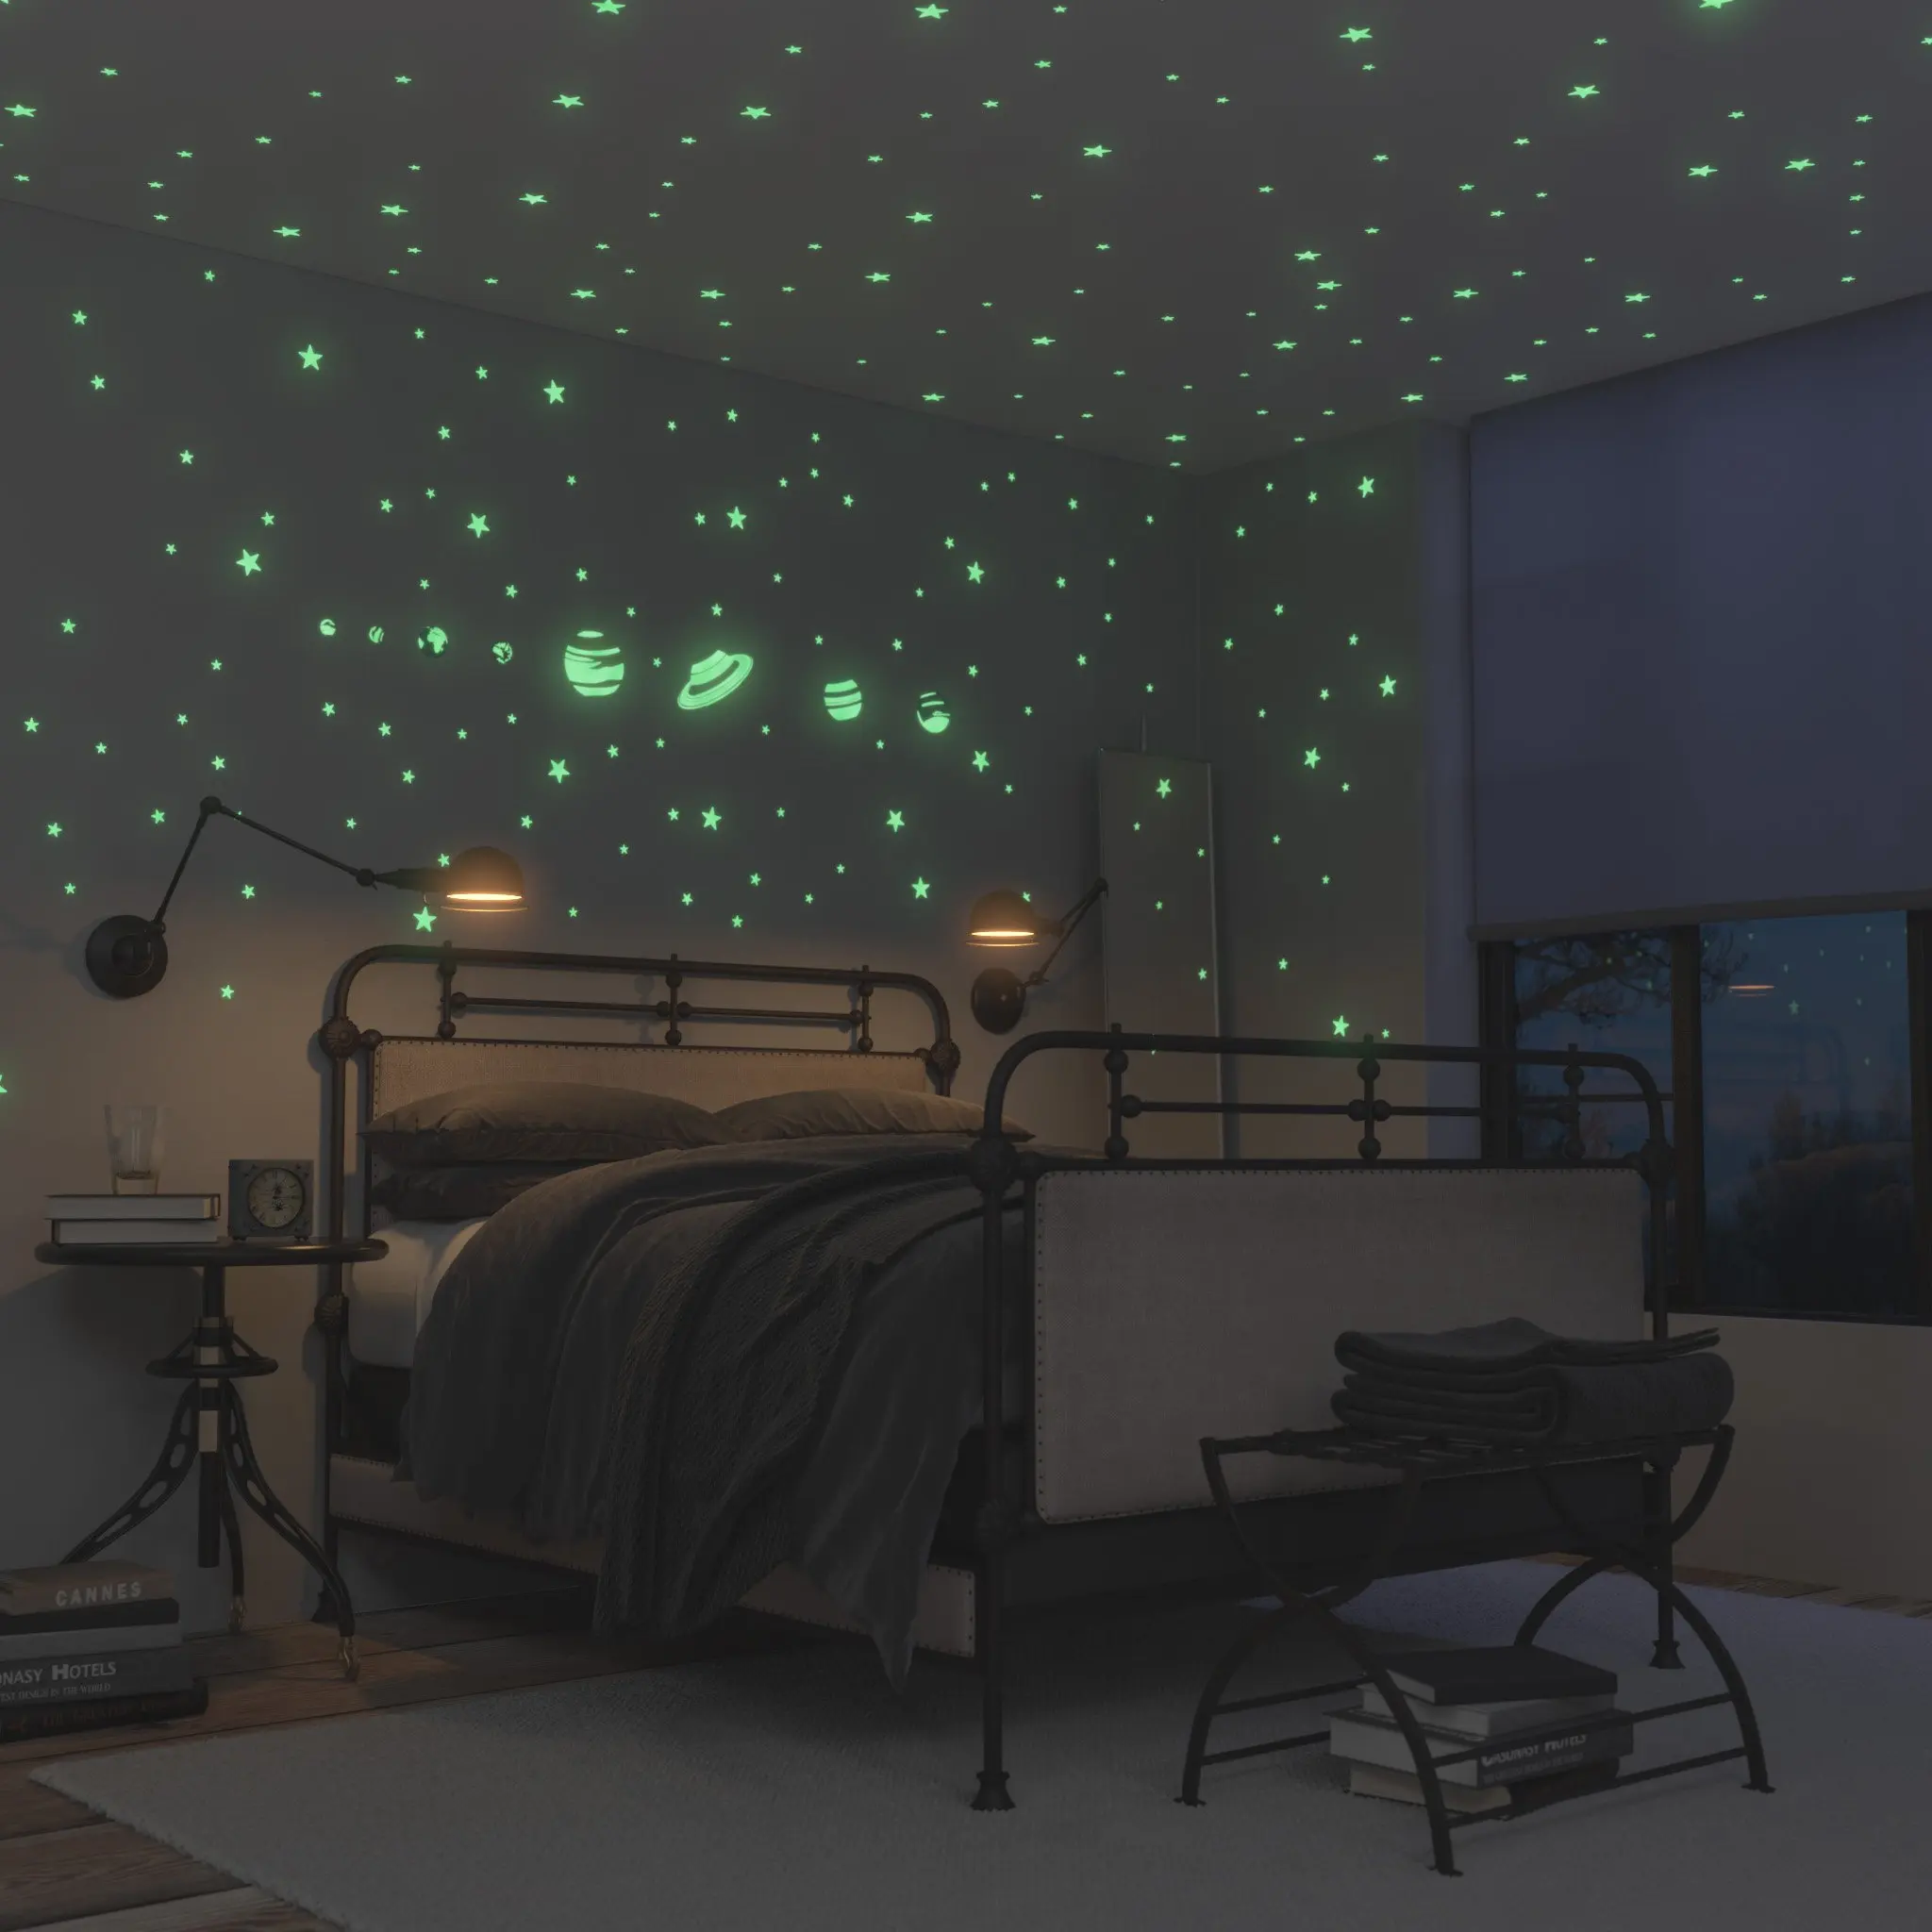 Делаем звездное небо. Комната в космическом стиле. Спальня в стиле космос. Звездное небо в комнате. Звёздное небо в комнате на потолке.